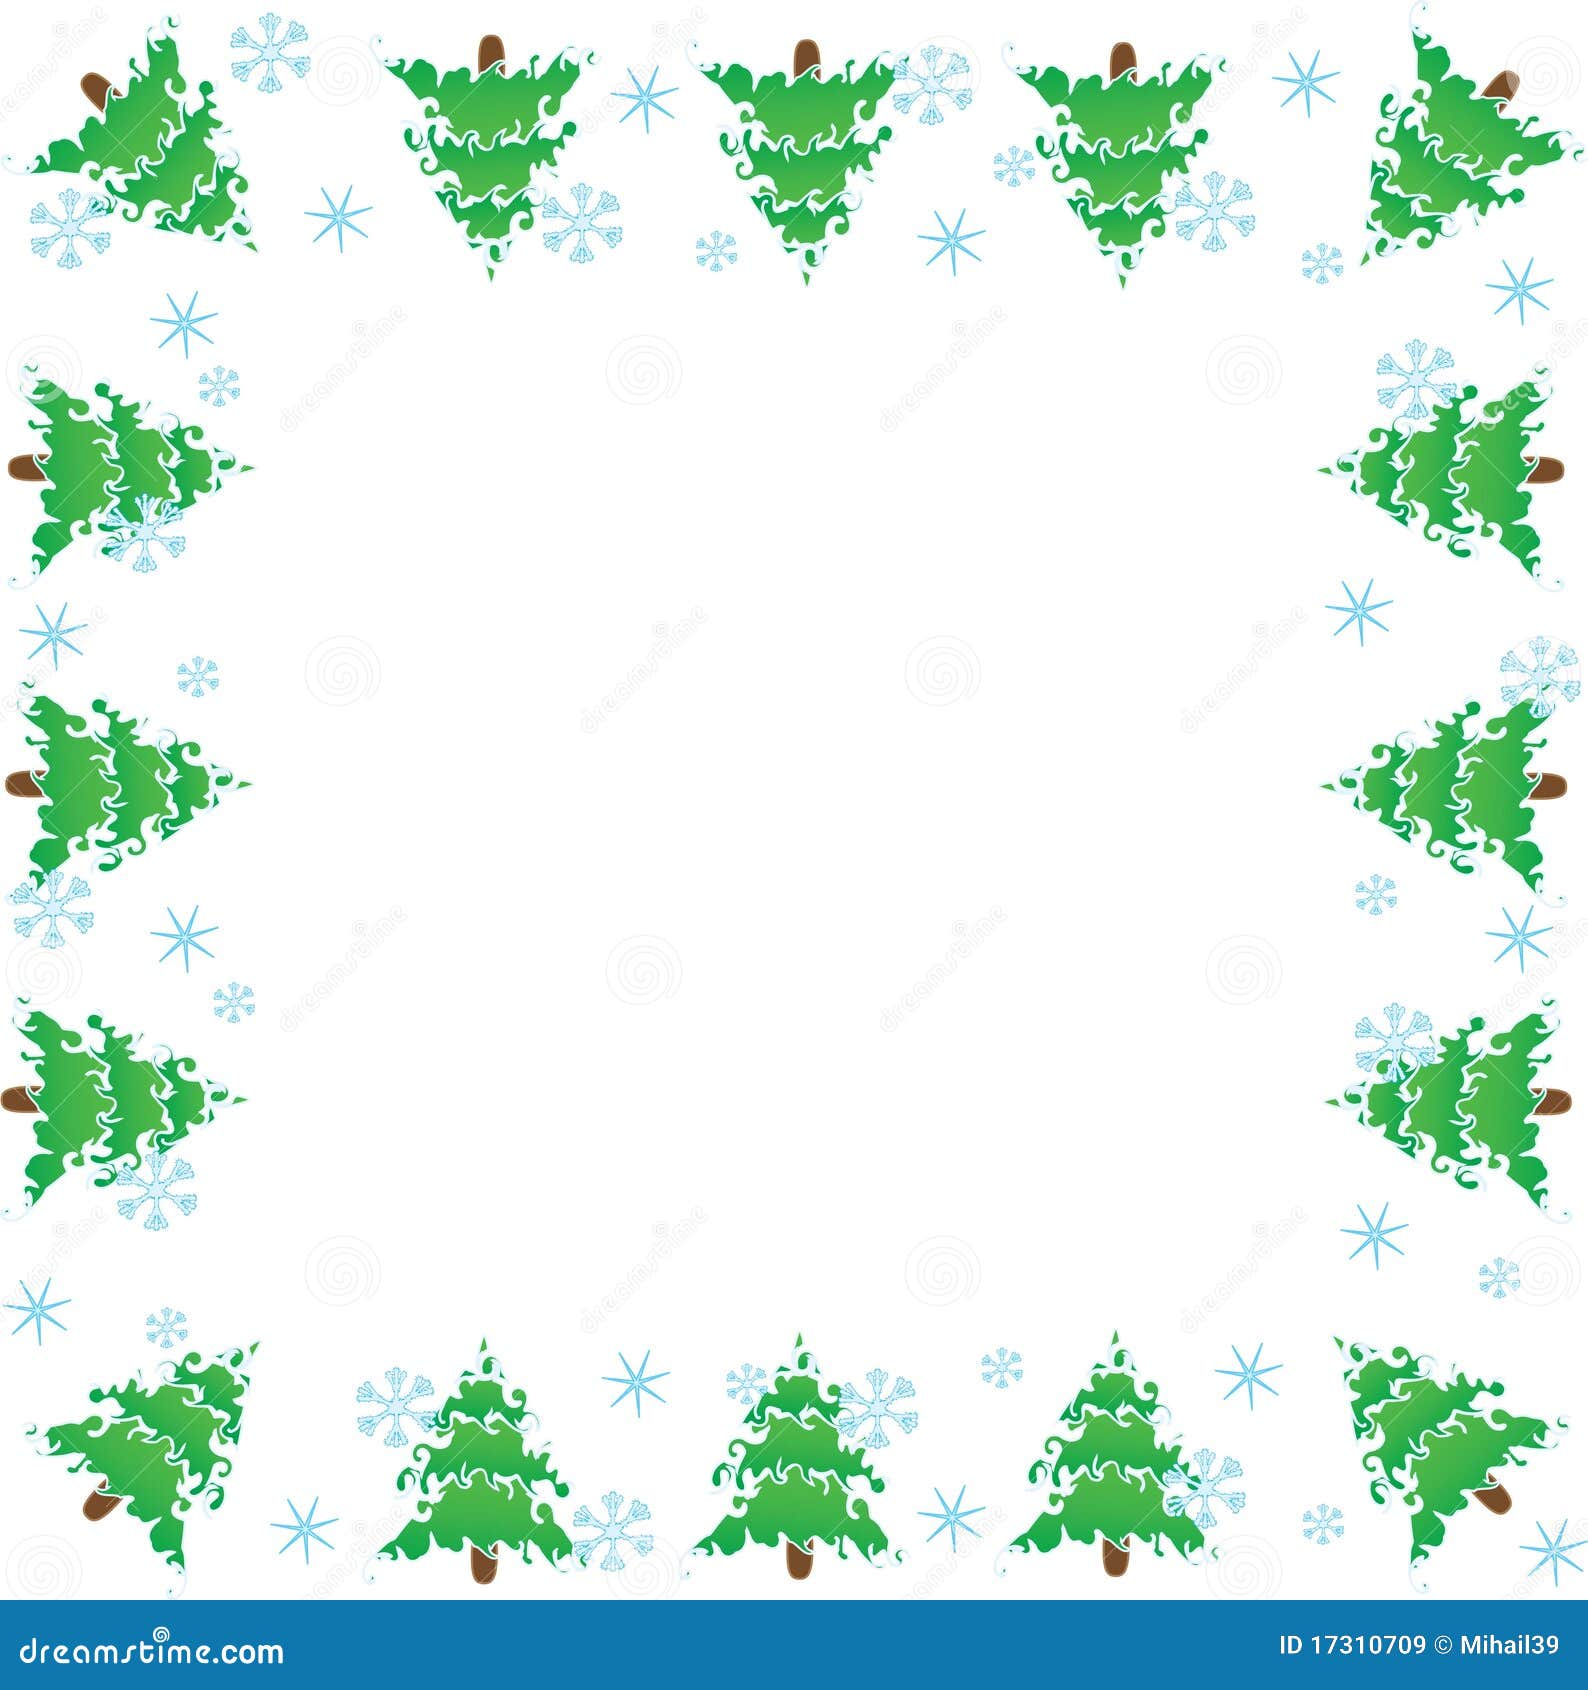 Cornici Foto Di Natale.Cornice Alberi Di Natale Illustrazione Di Stock Illustrazione Di Struttura 17310709